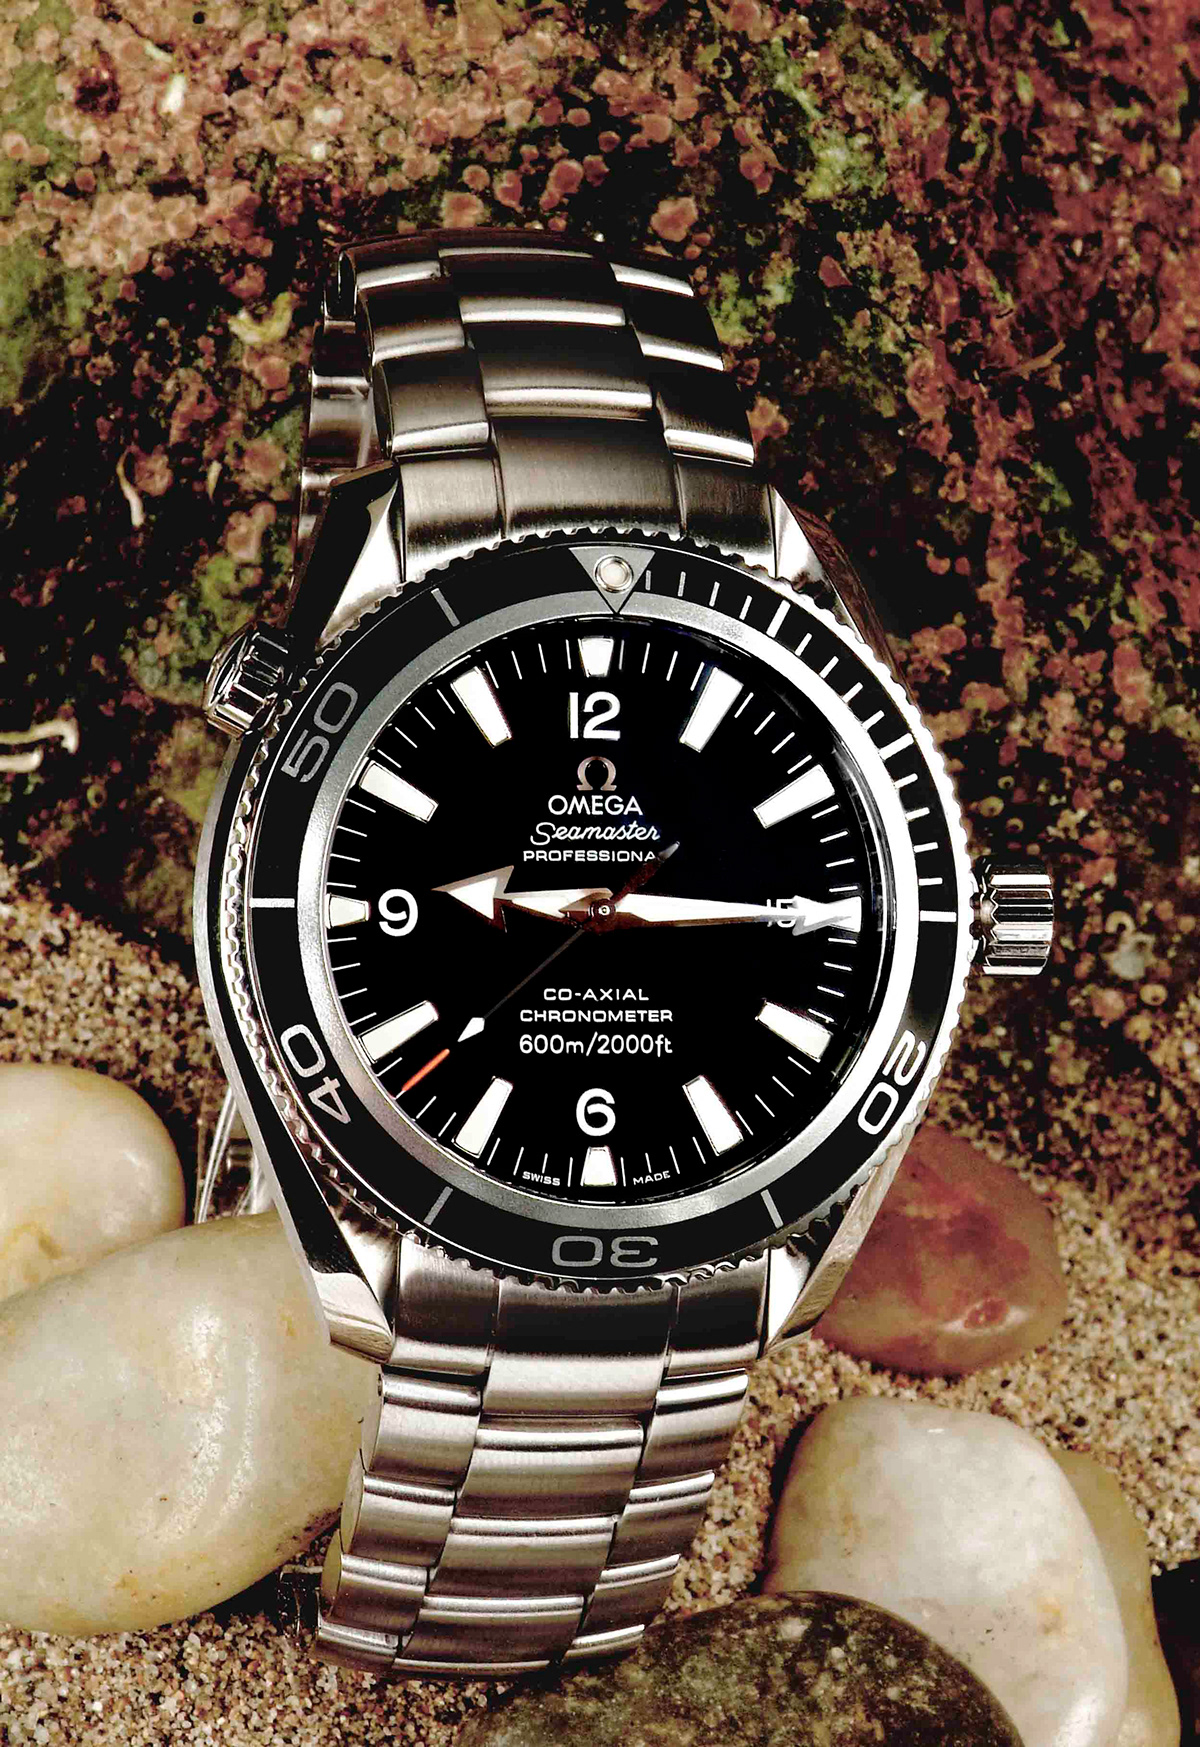 relojes watch publicidad lujo marca luxury